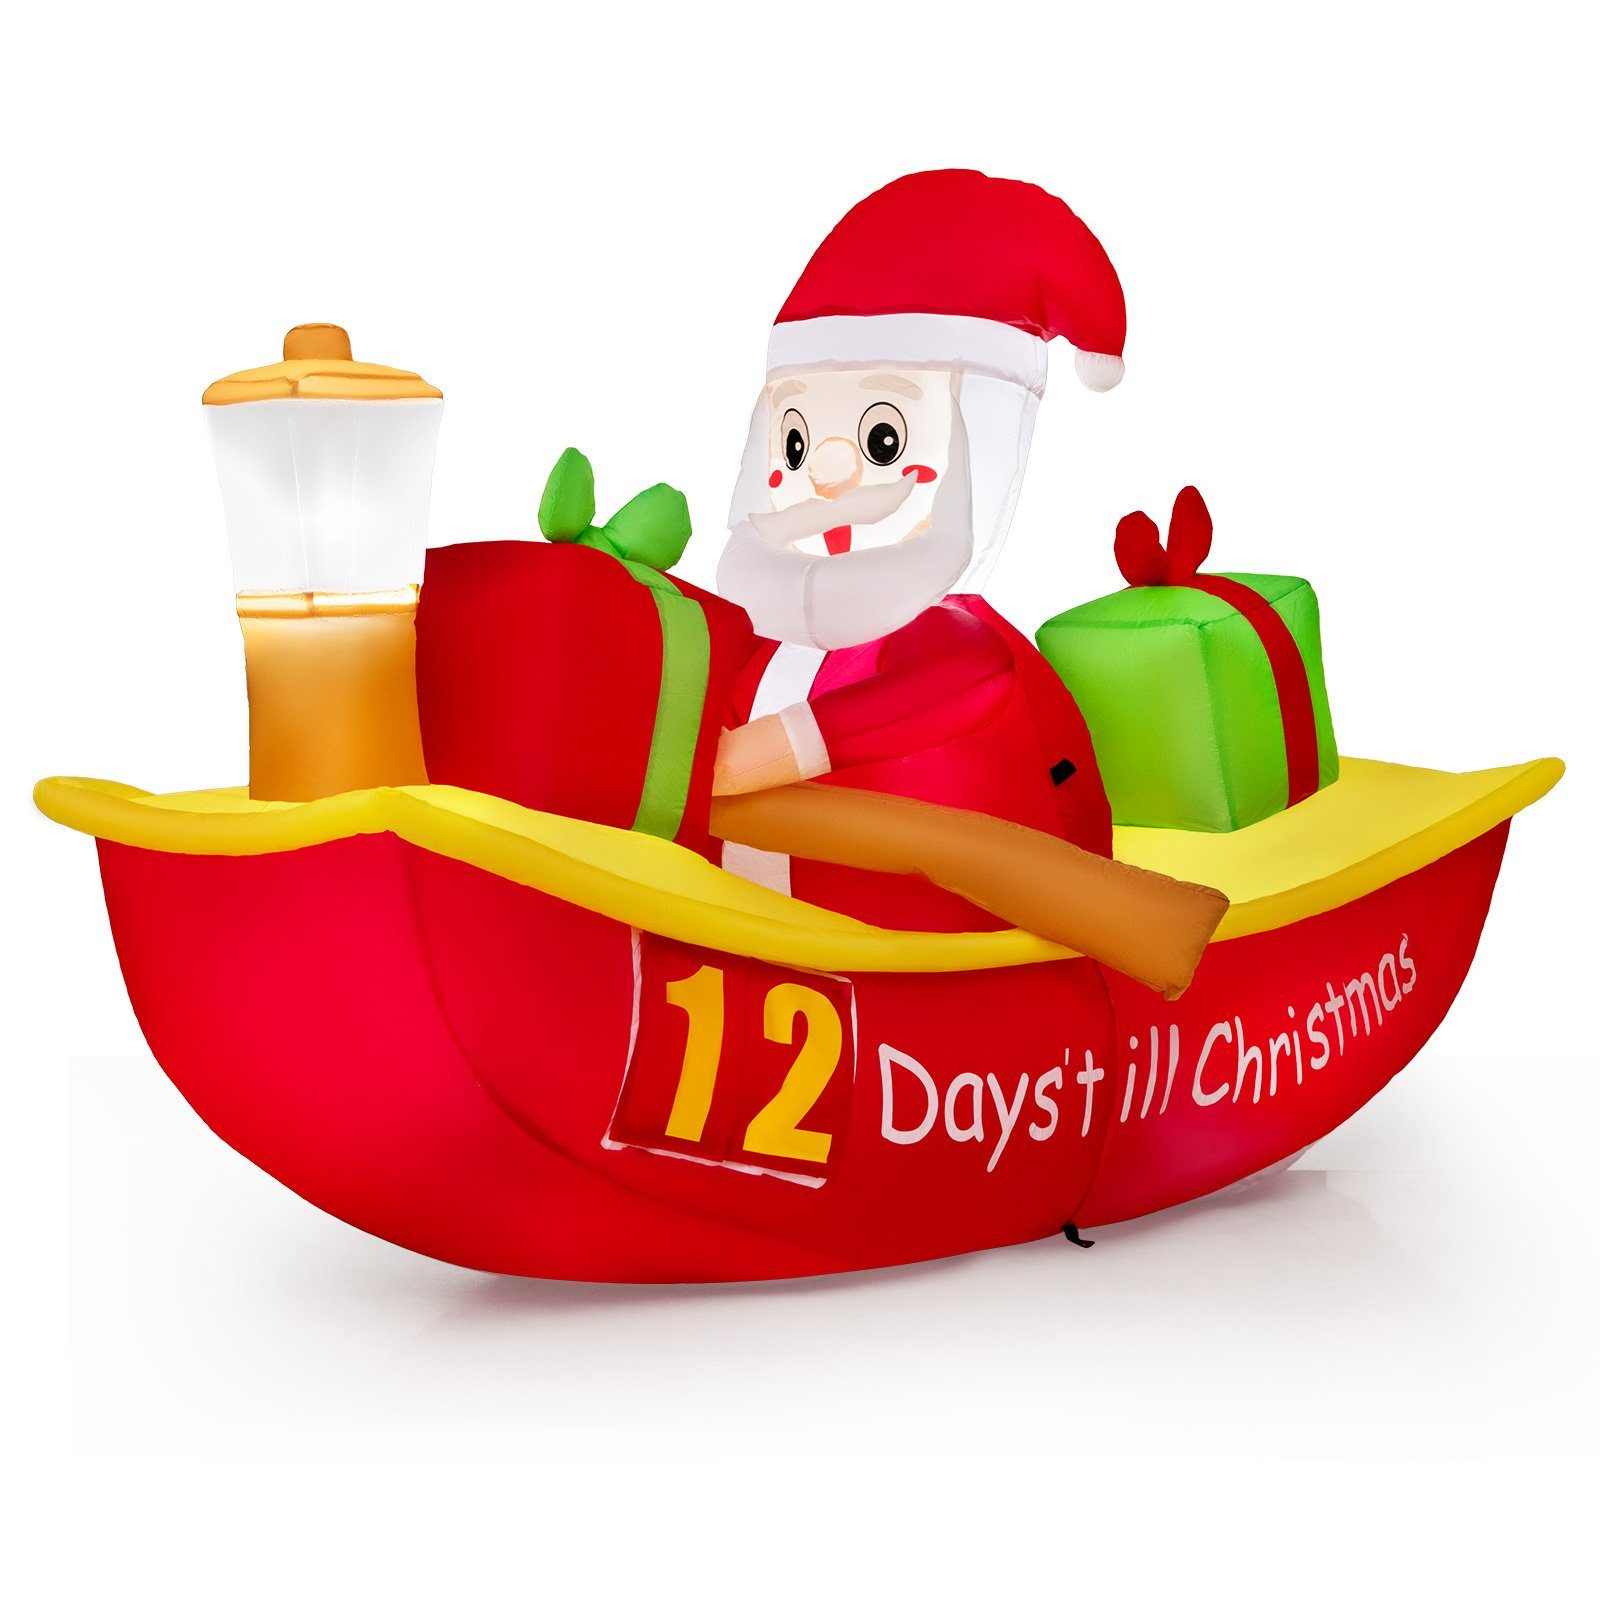 COSTWAY Weihnachtsmann, LED Deko Countdown im Ruderboot aufblasbar